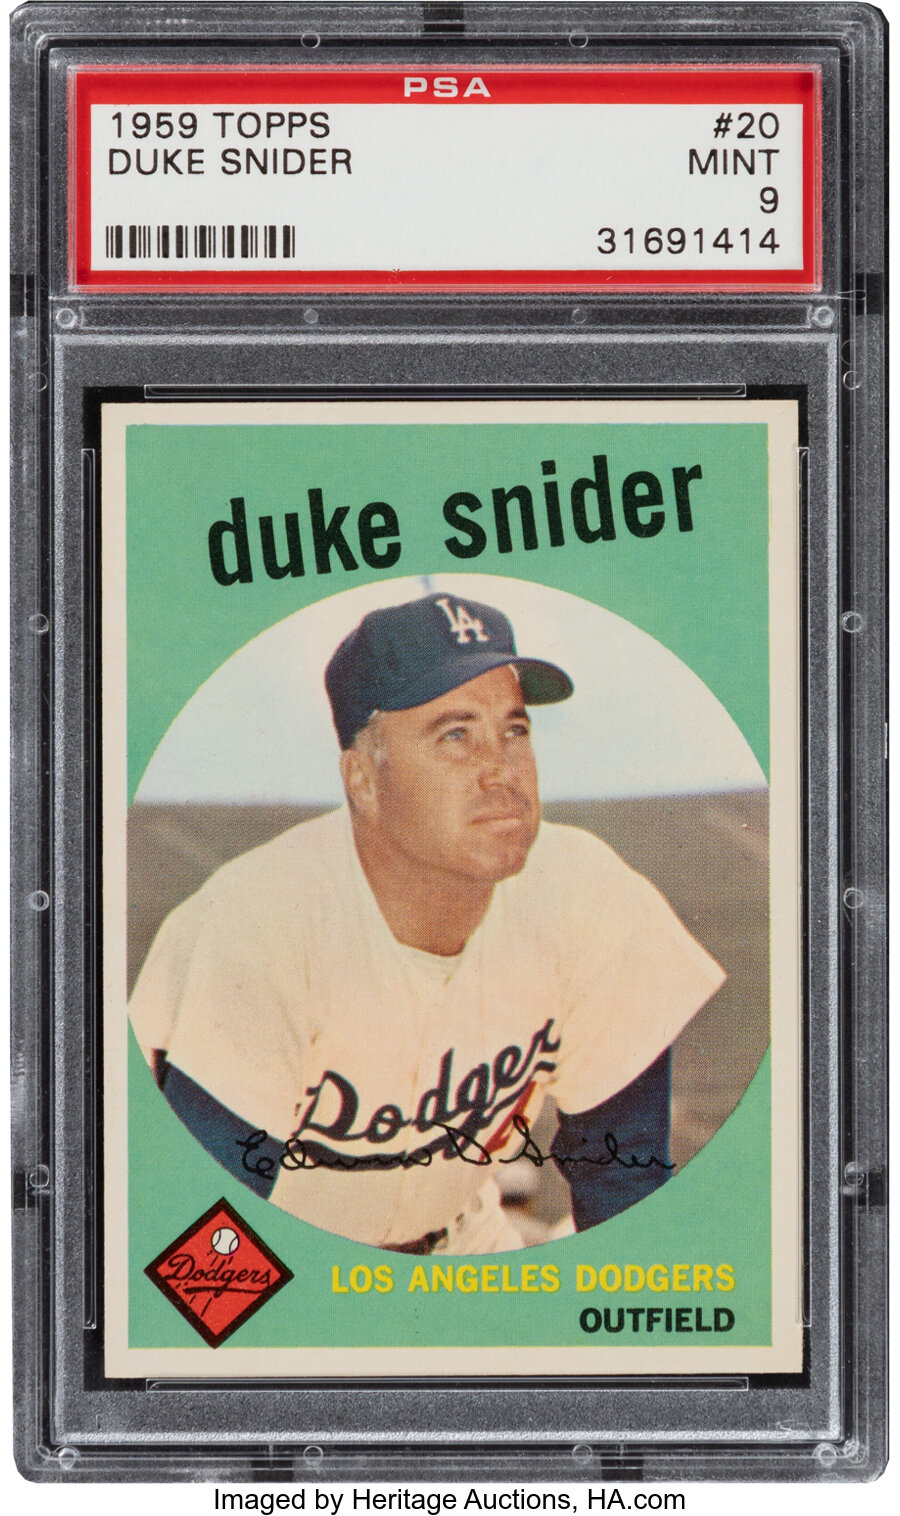 1959 Topps Duke Snider #20 PSA Mint 9 - Two Higher